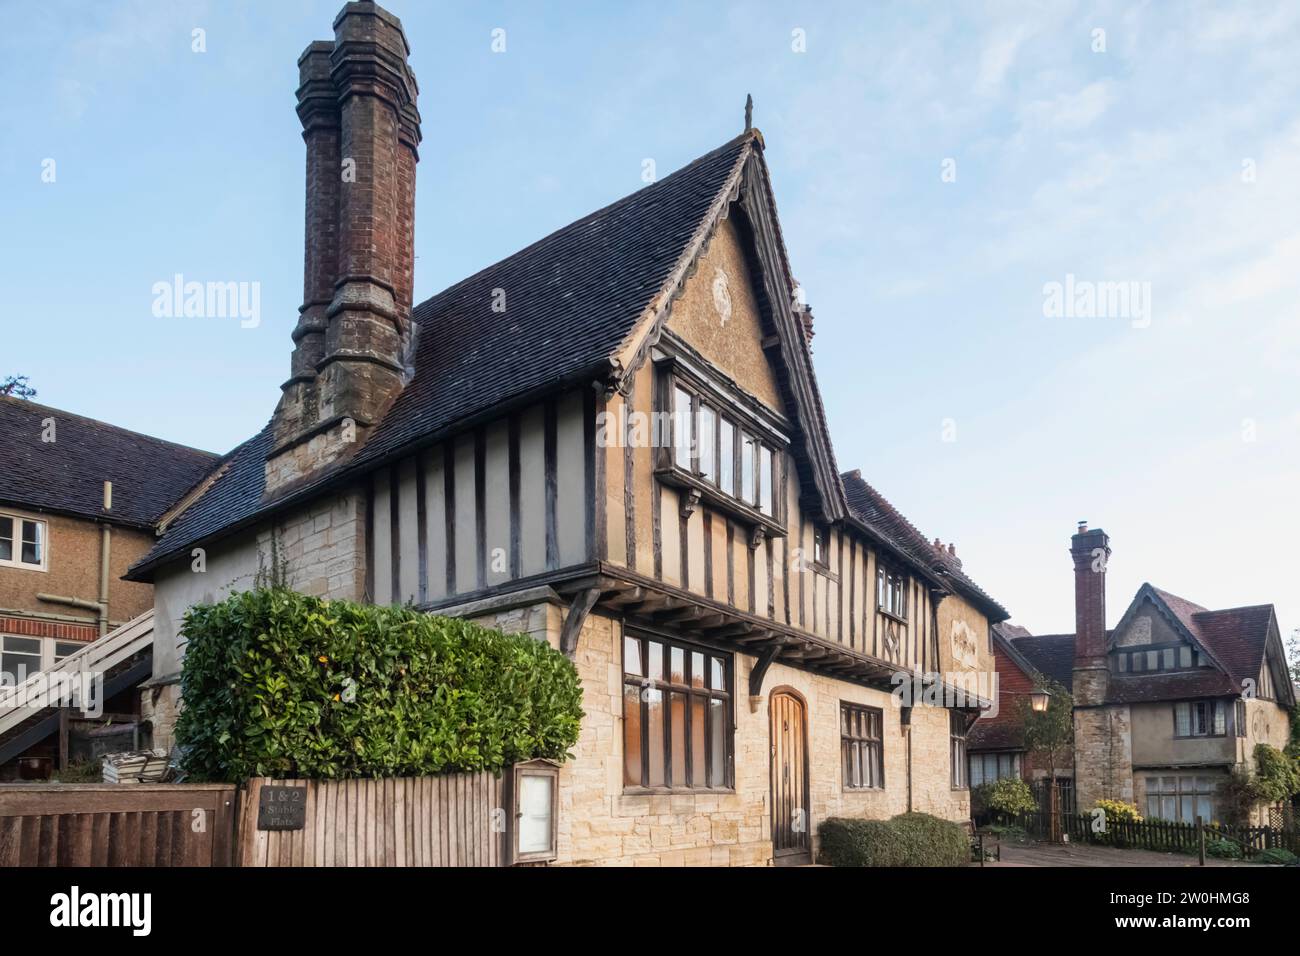 England, Kent, Penshurst Place, Tudor Era Half Timbered Buildings Stock Photo